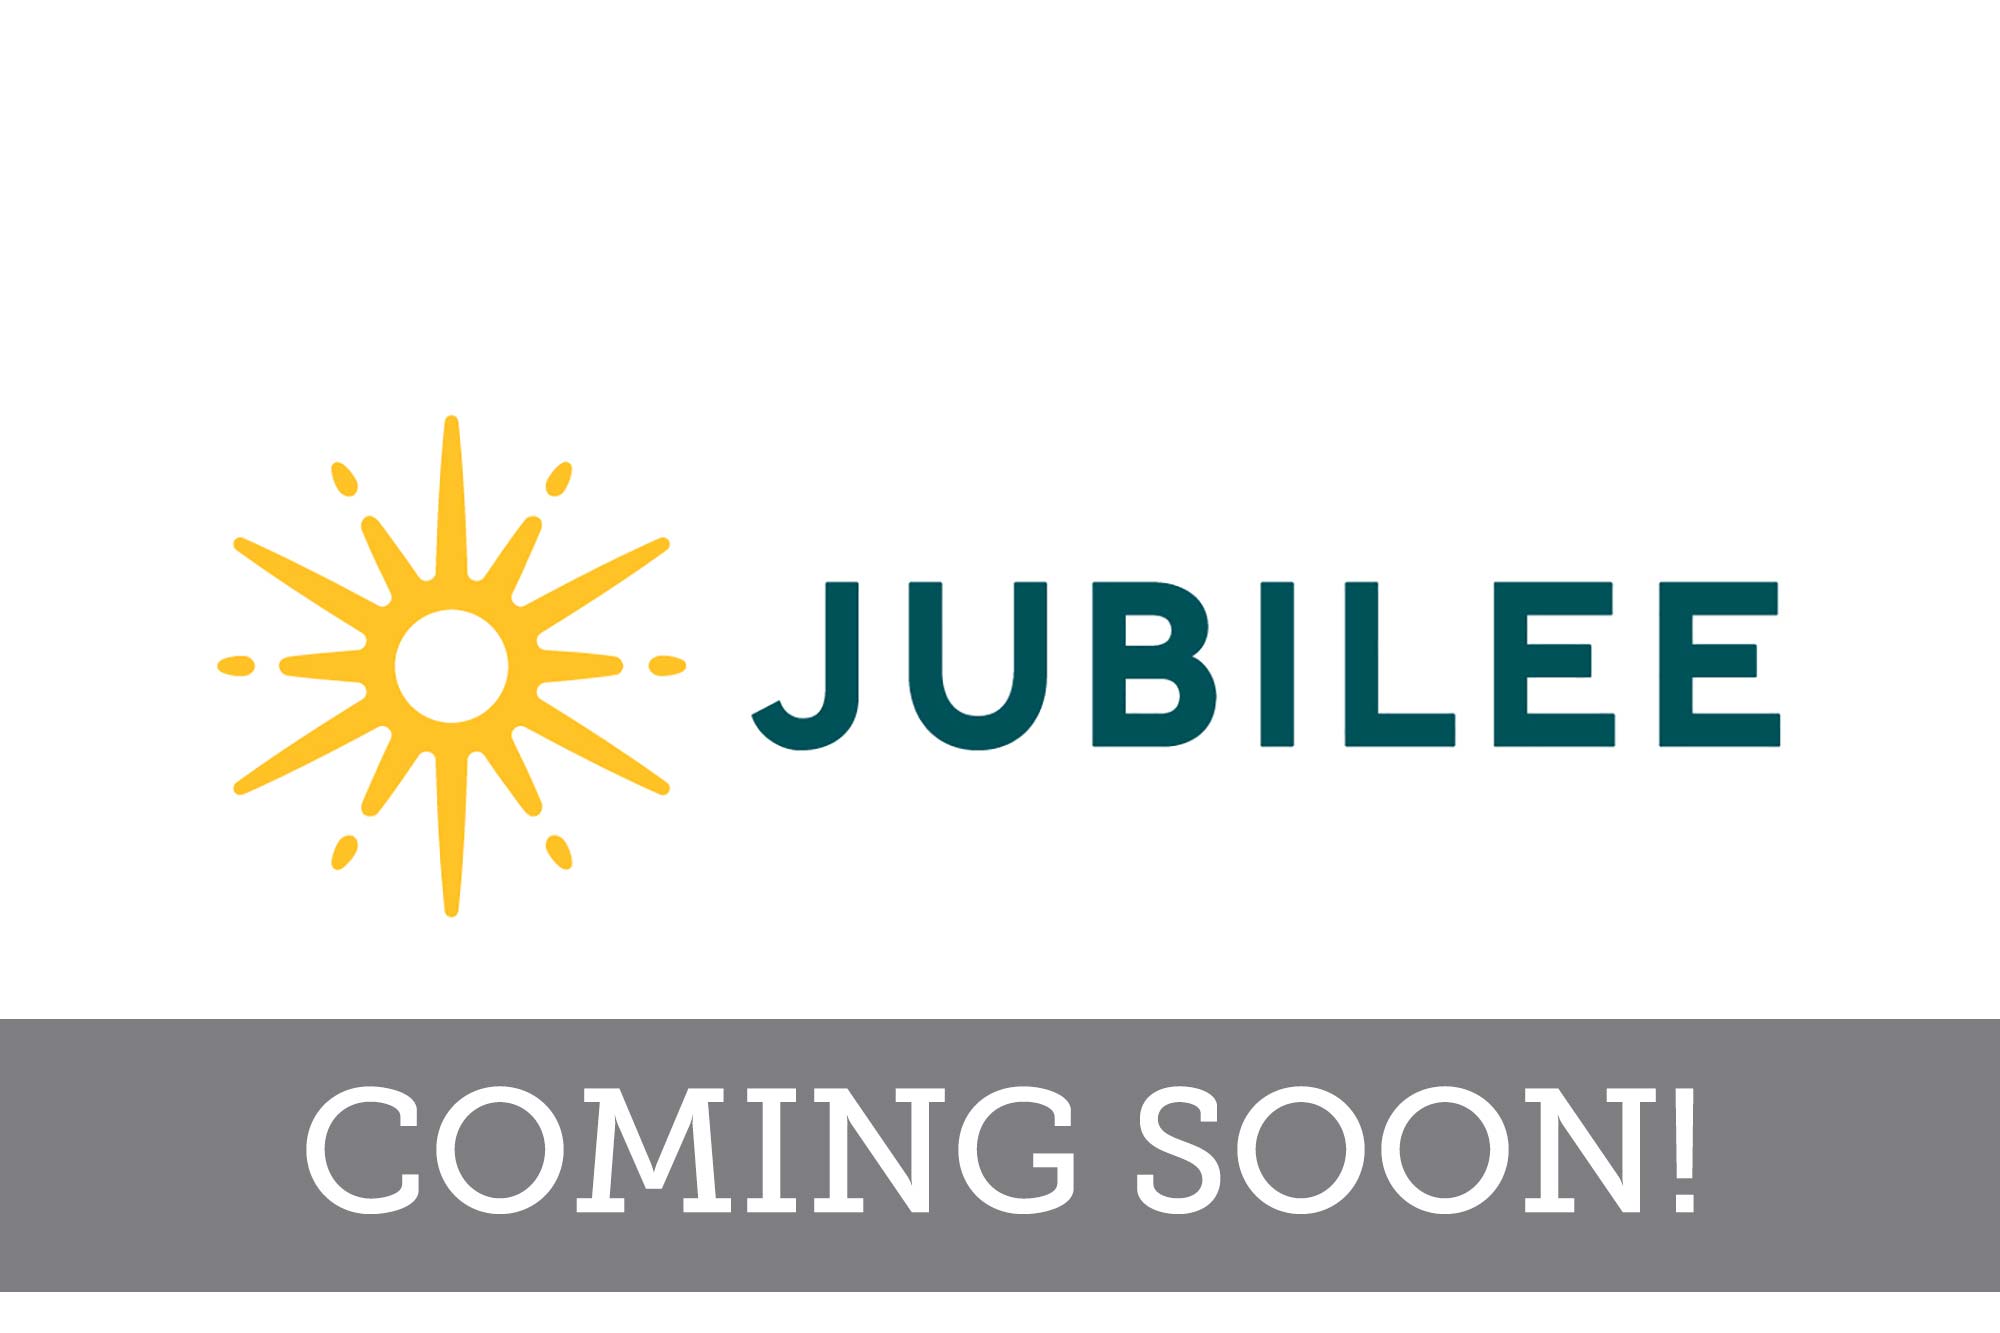 Jubilee - Coming Soon